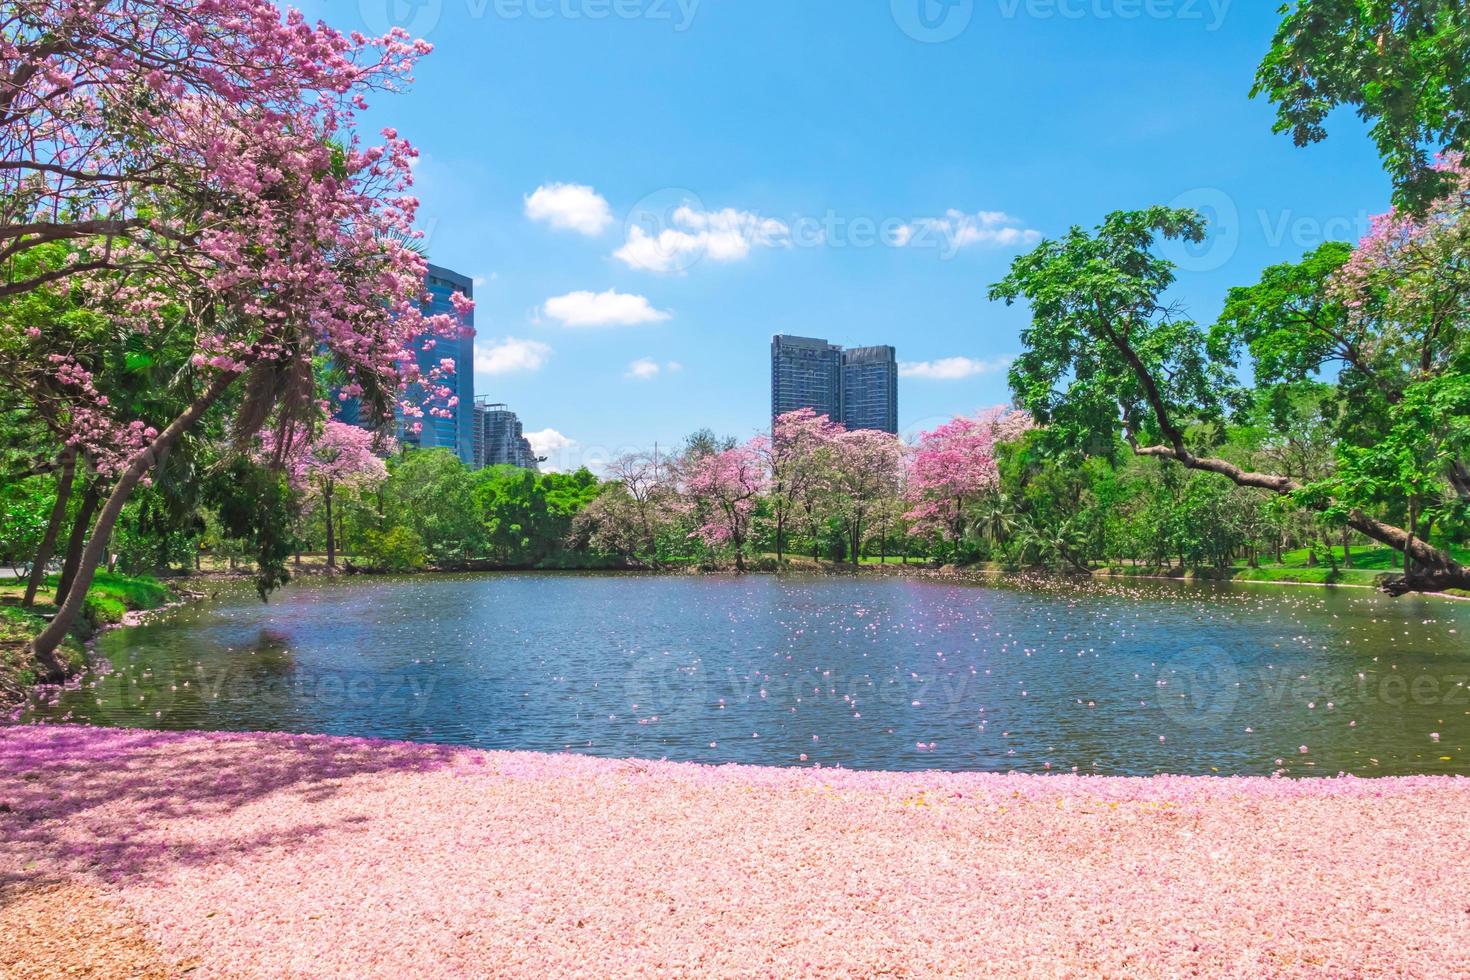 flores de árvores de trombeta rosa estão florescendo no parque público de bangkok, tailândia foto